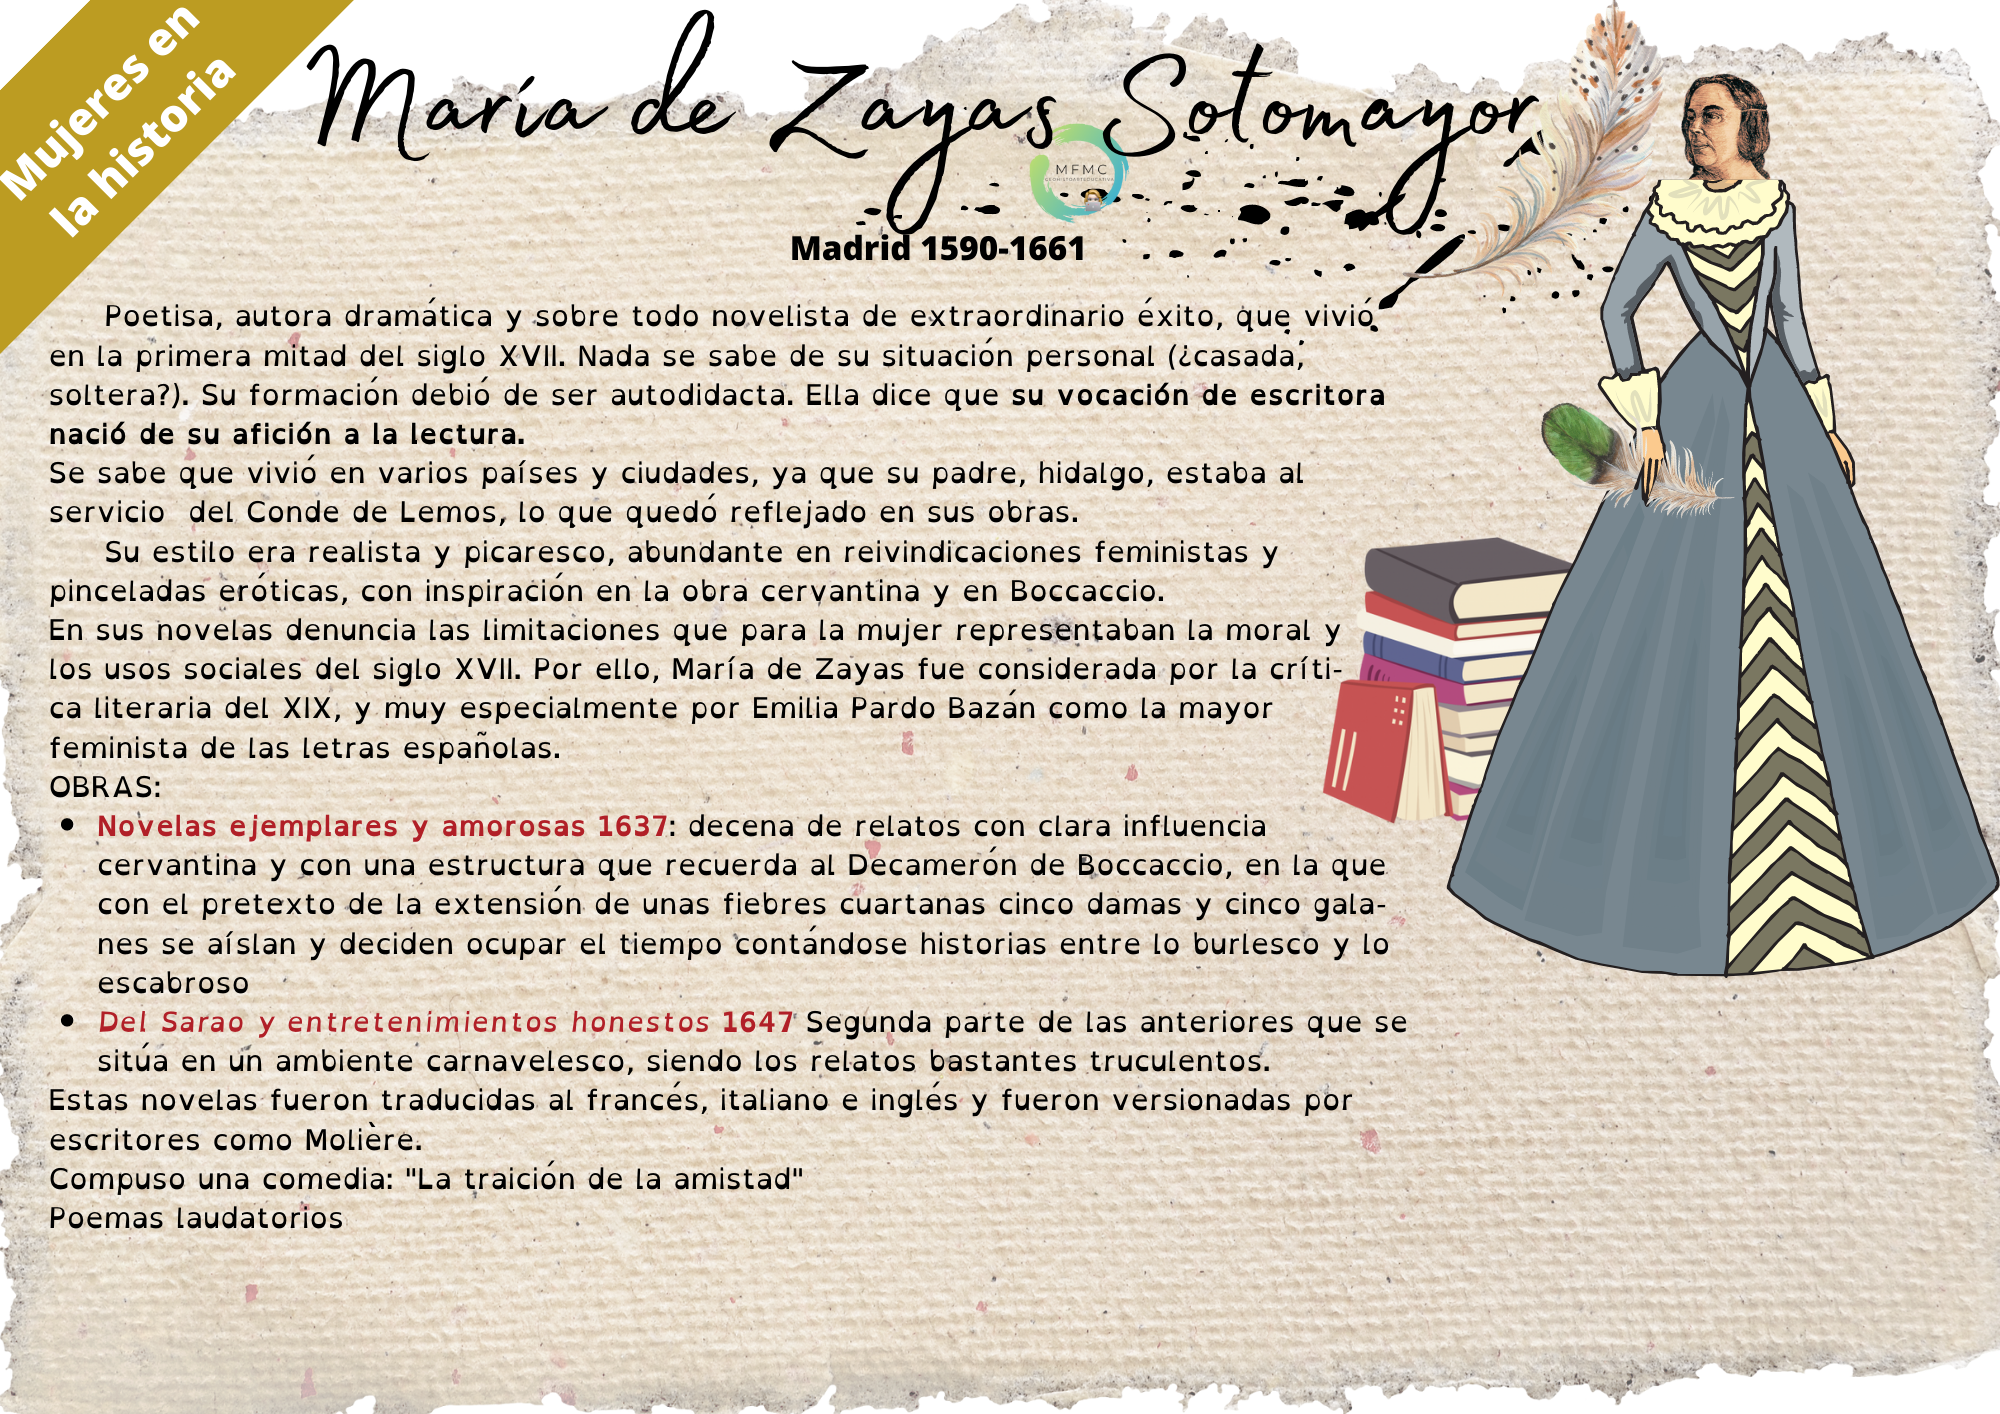 María de Zayas